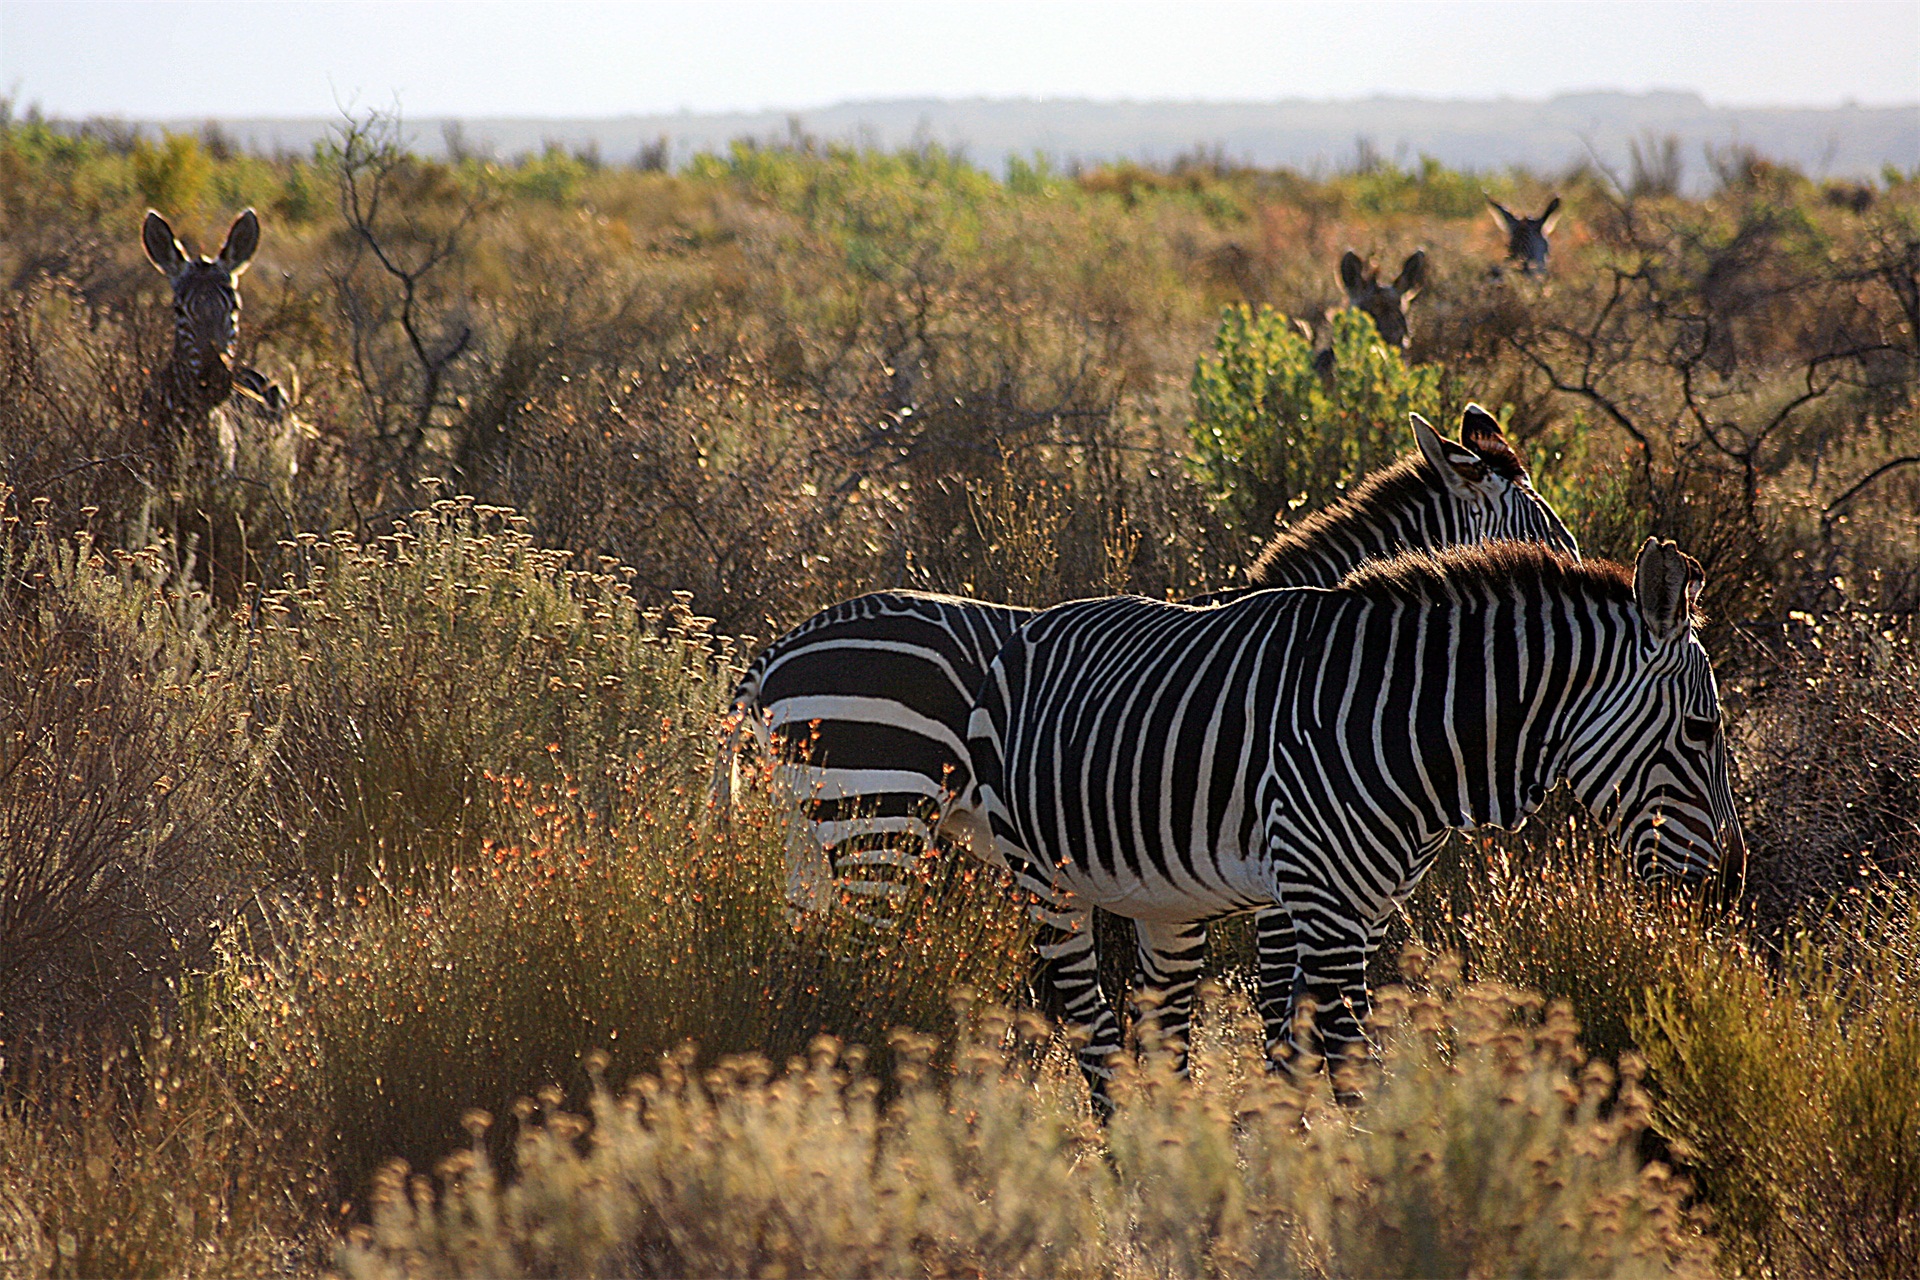 能在陡峭山区生活的山斑马,竟成了南非濒临灭绝的哺乳动物